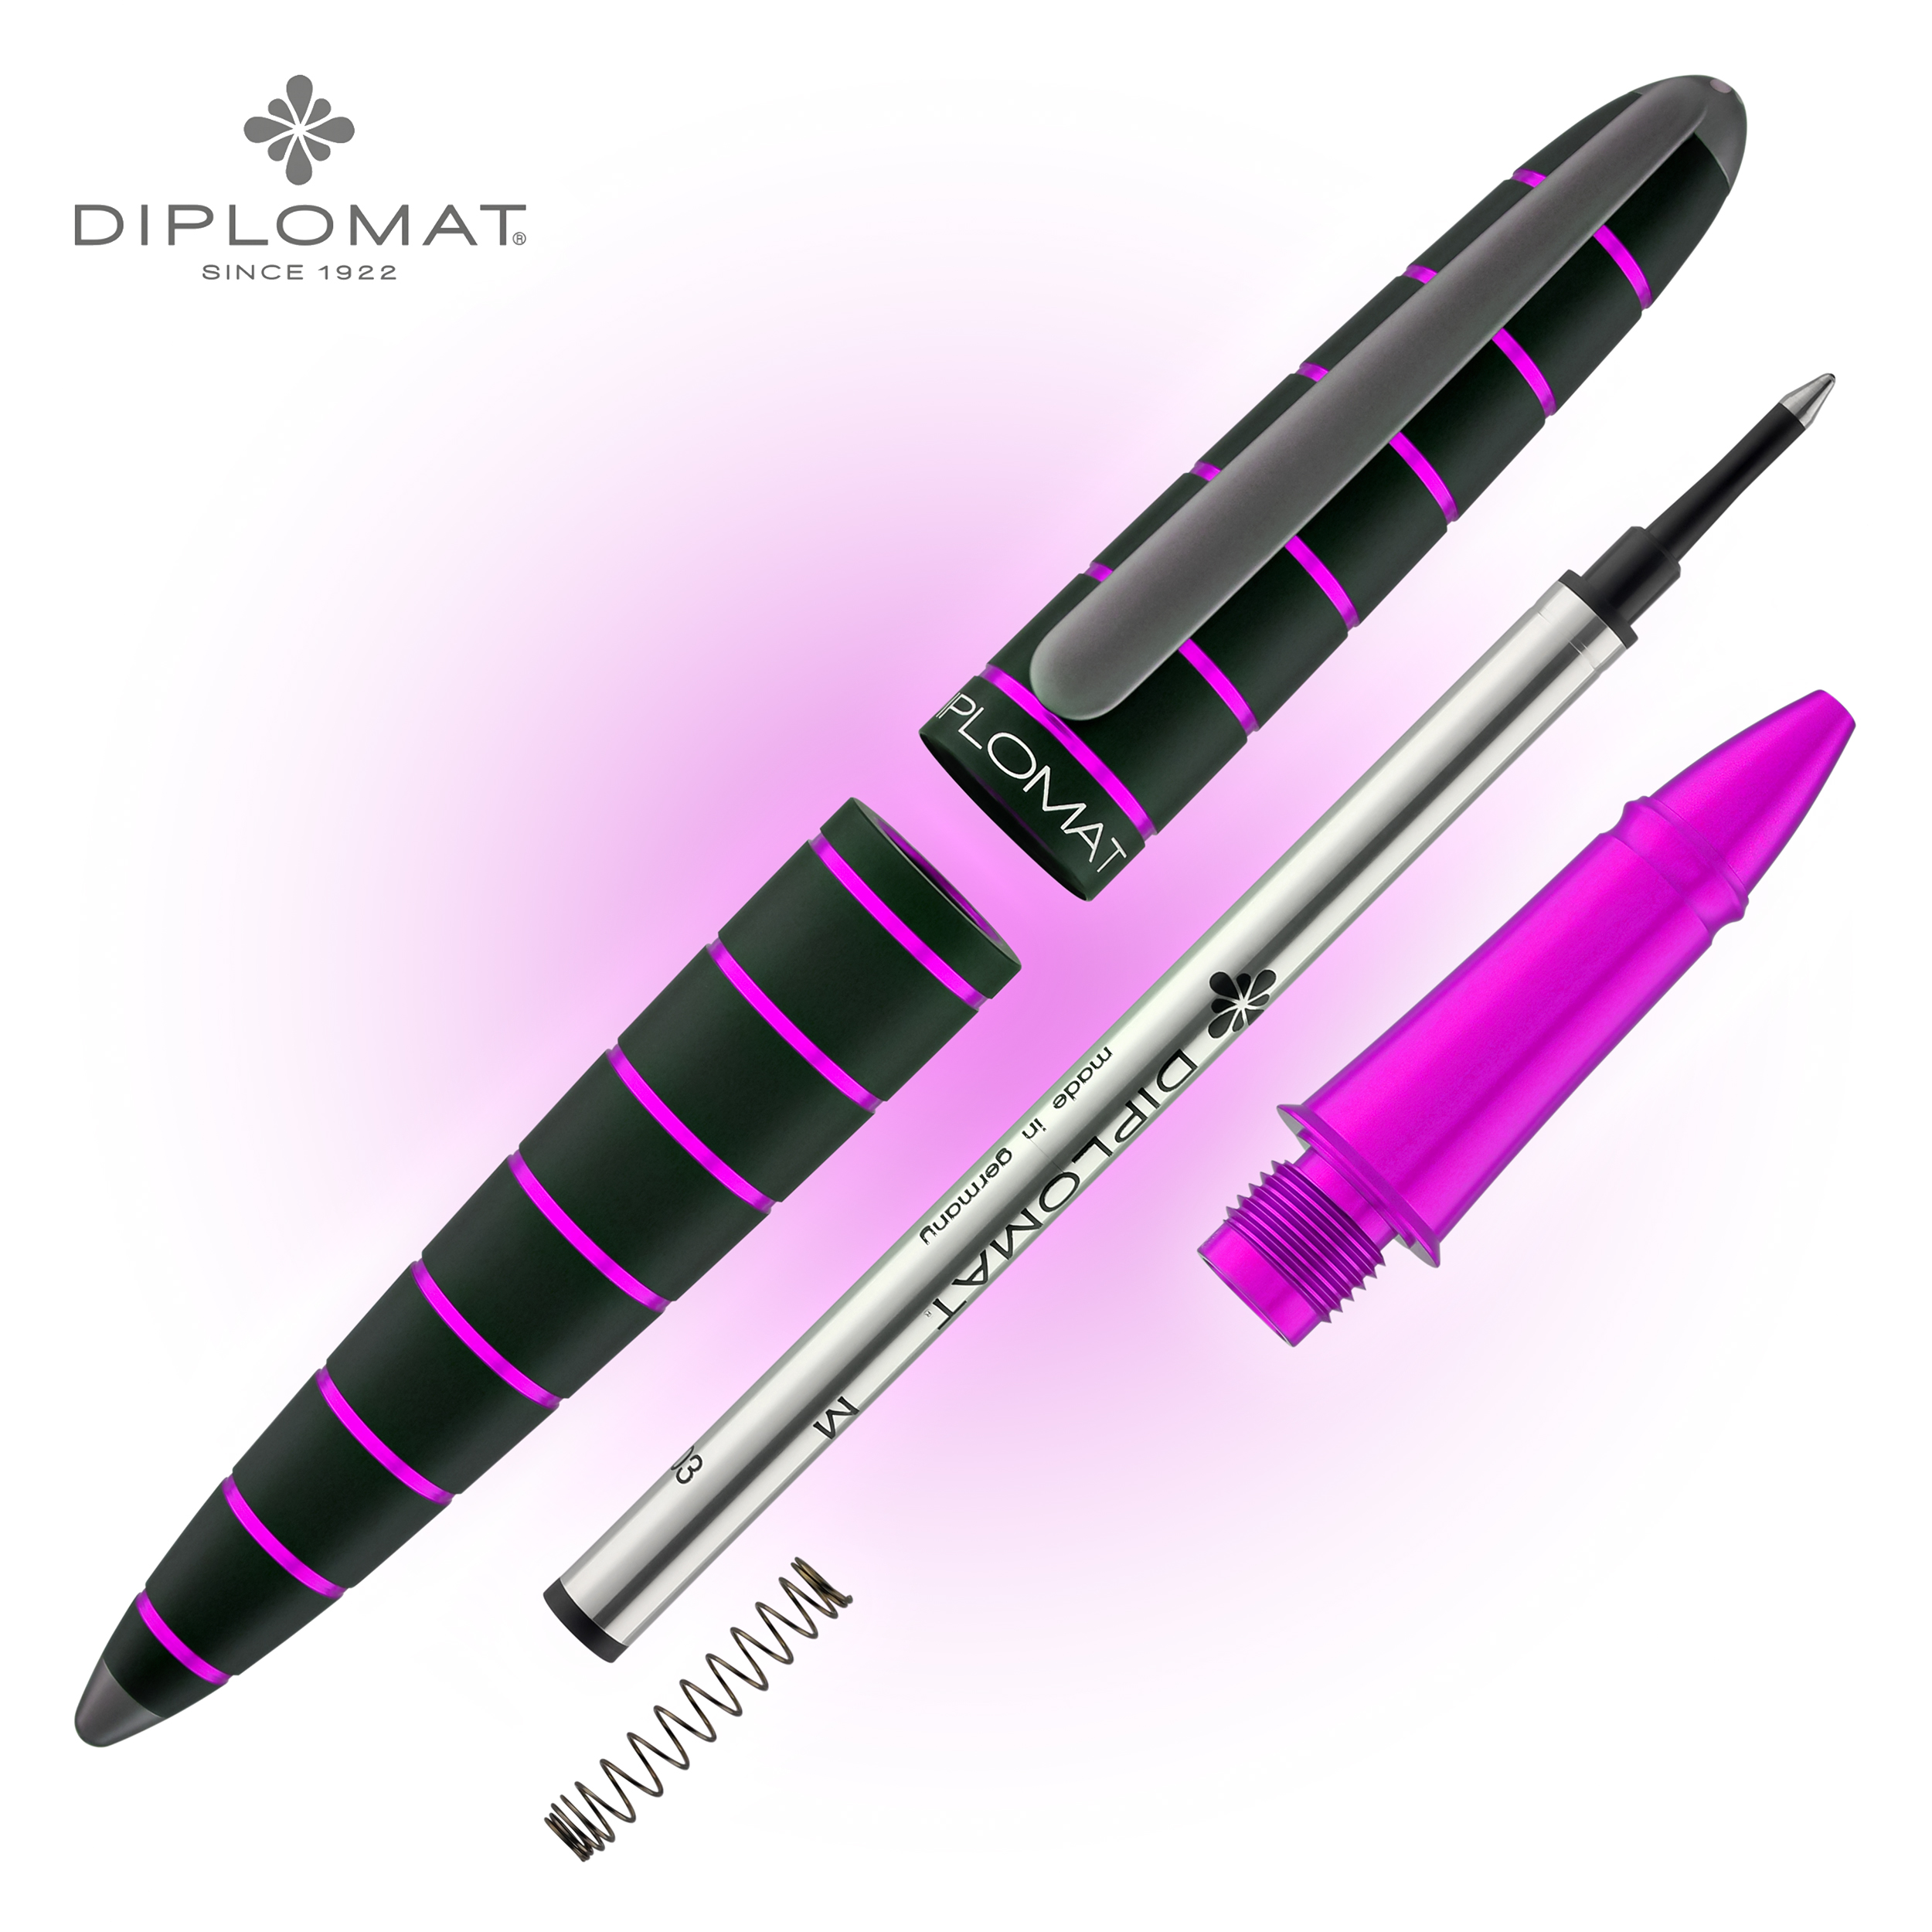 Diplomat Elox Rollerball Pen in Ring Black/Purple - NEW in Original Box